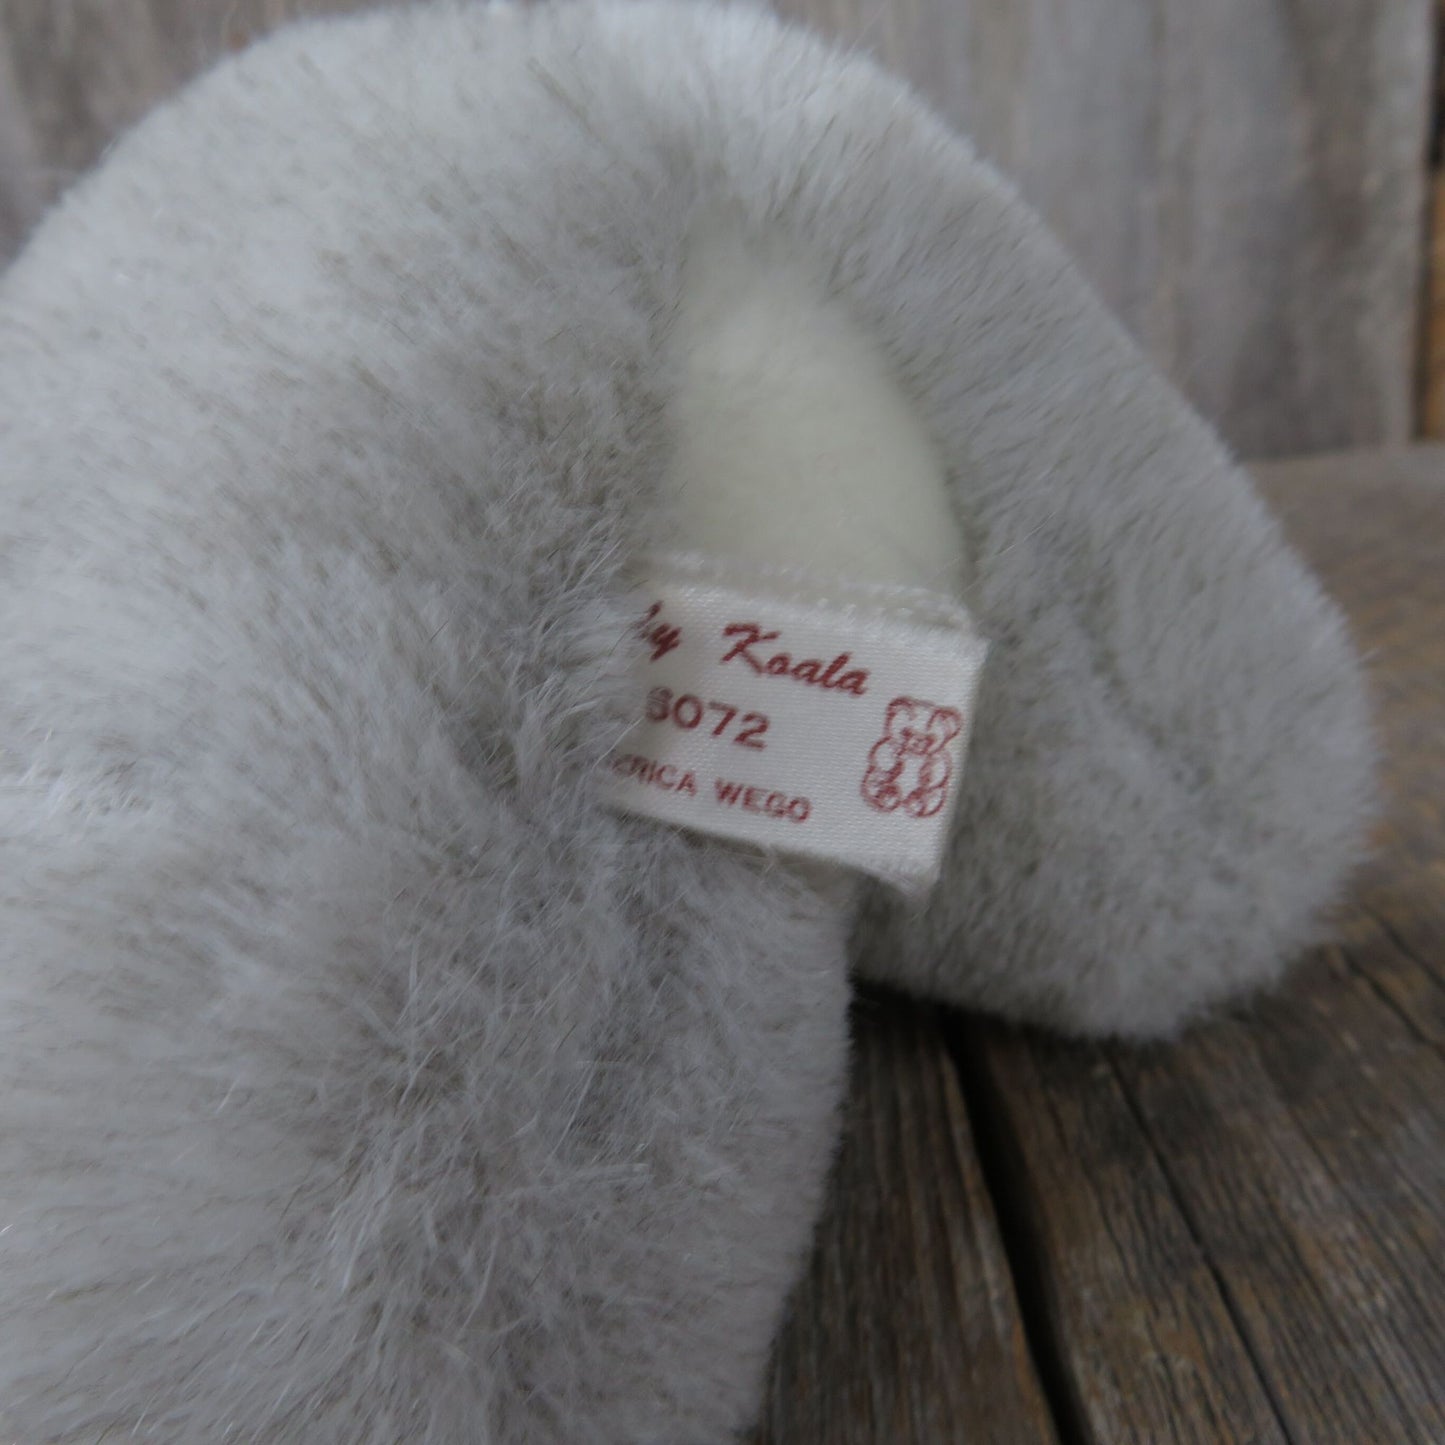 Vintage Koala Baby Plush Stuffed America Wego Animal Stuffed Animal Korea